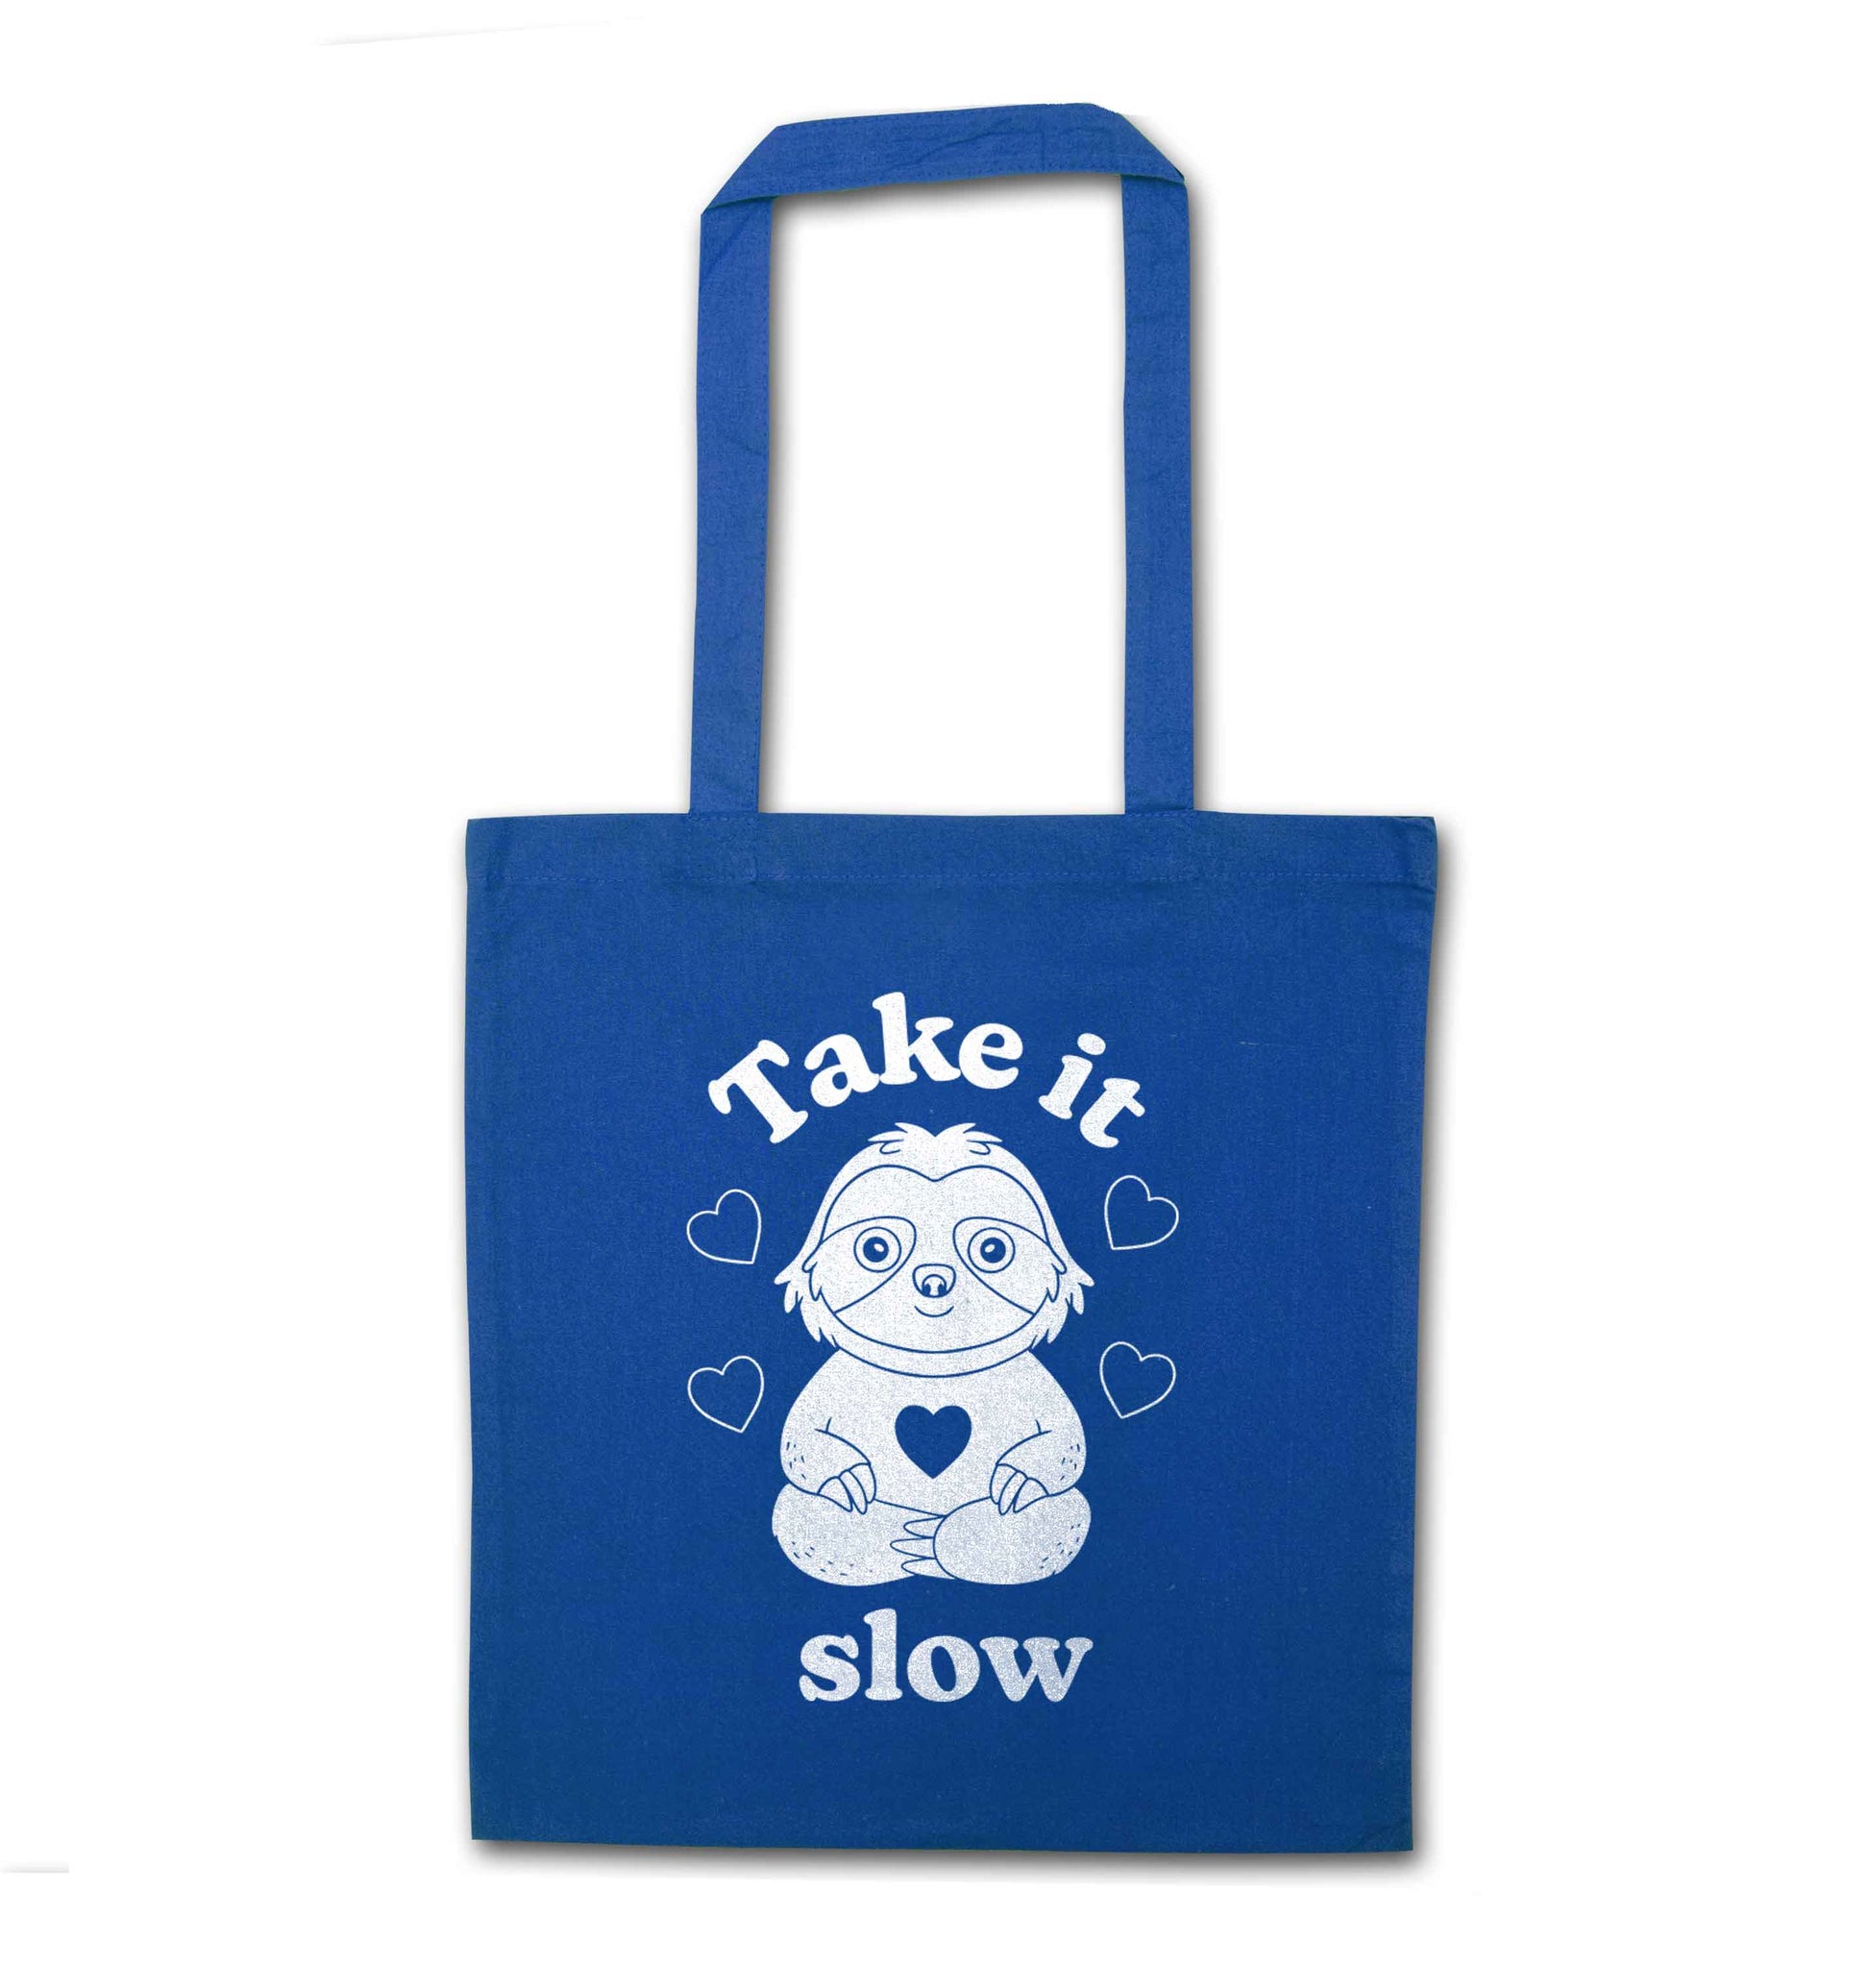 Take it slow blue tote bag